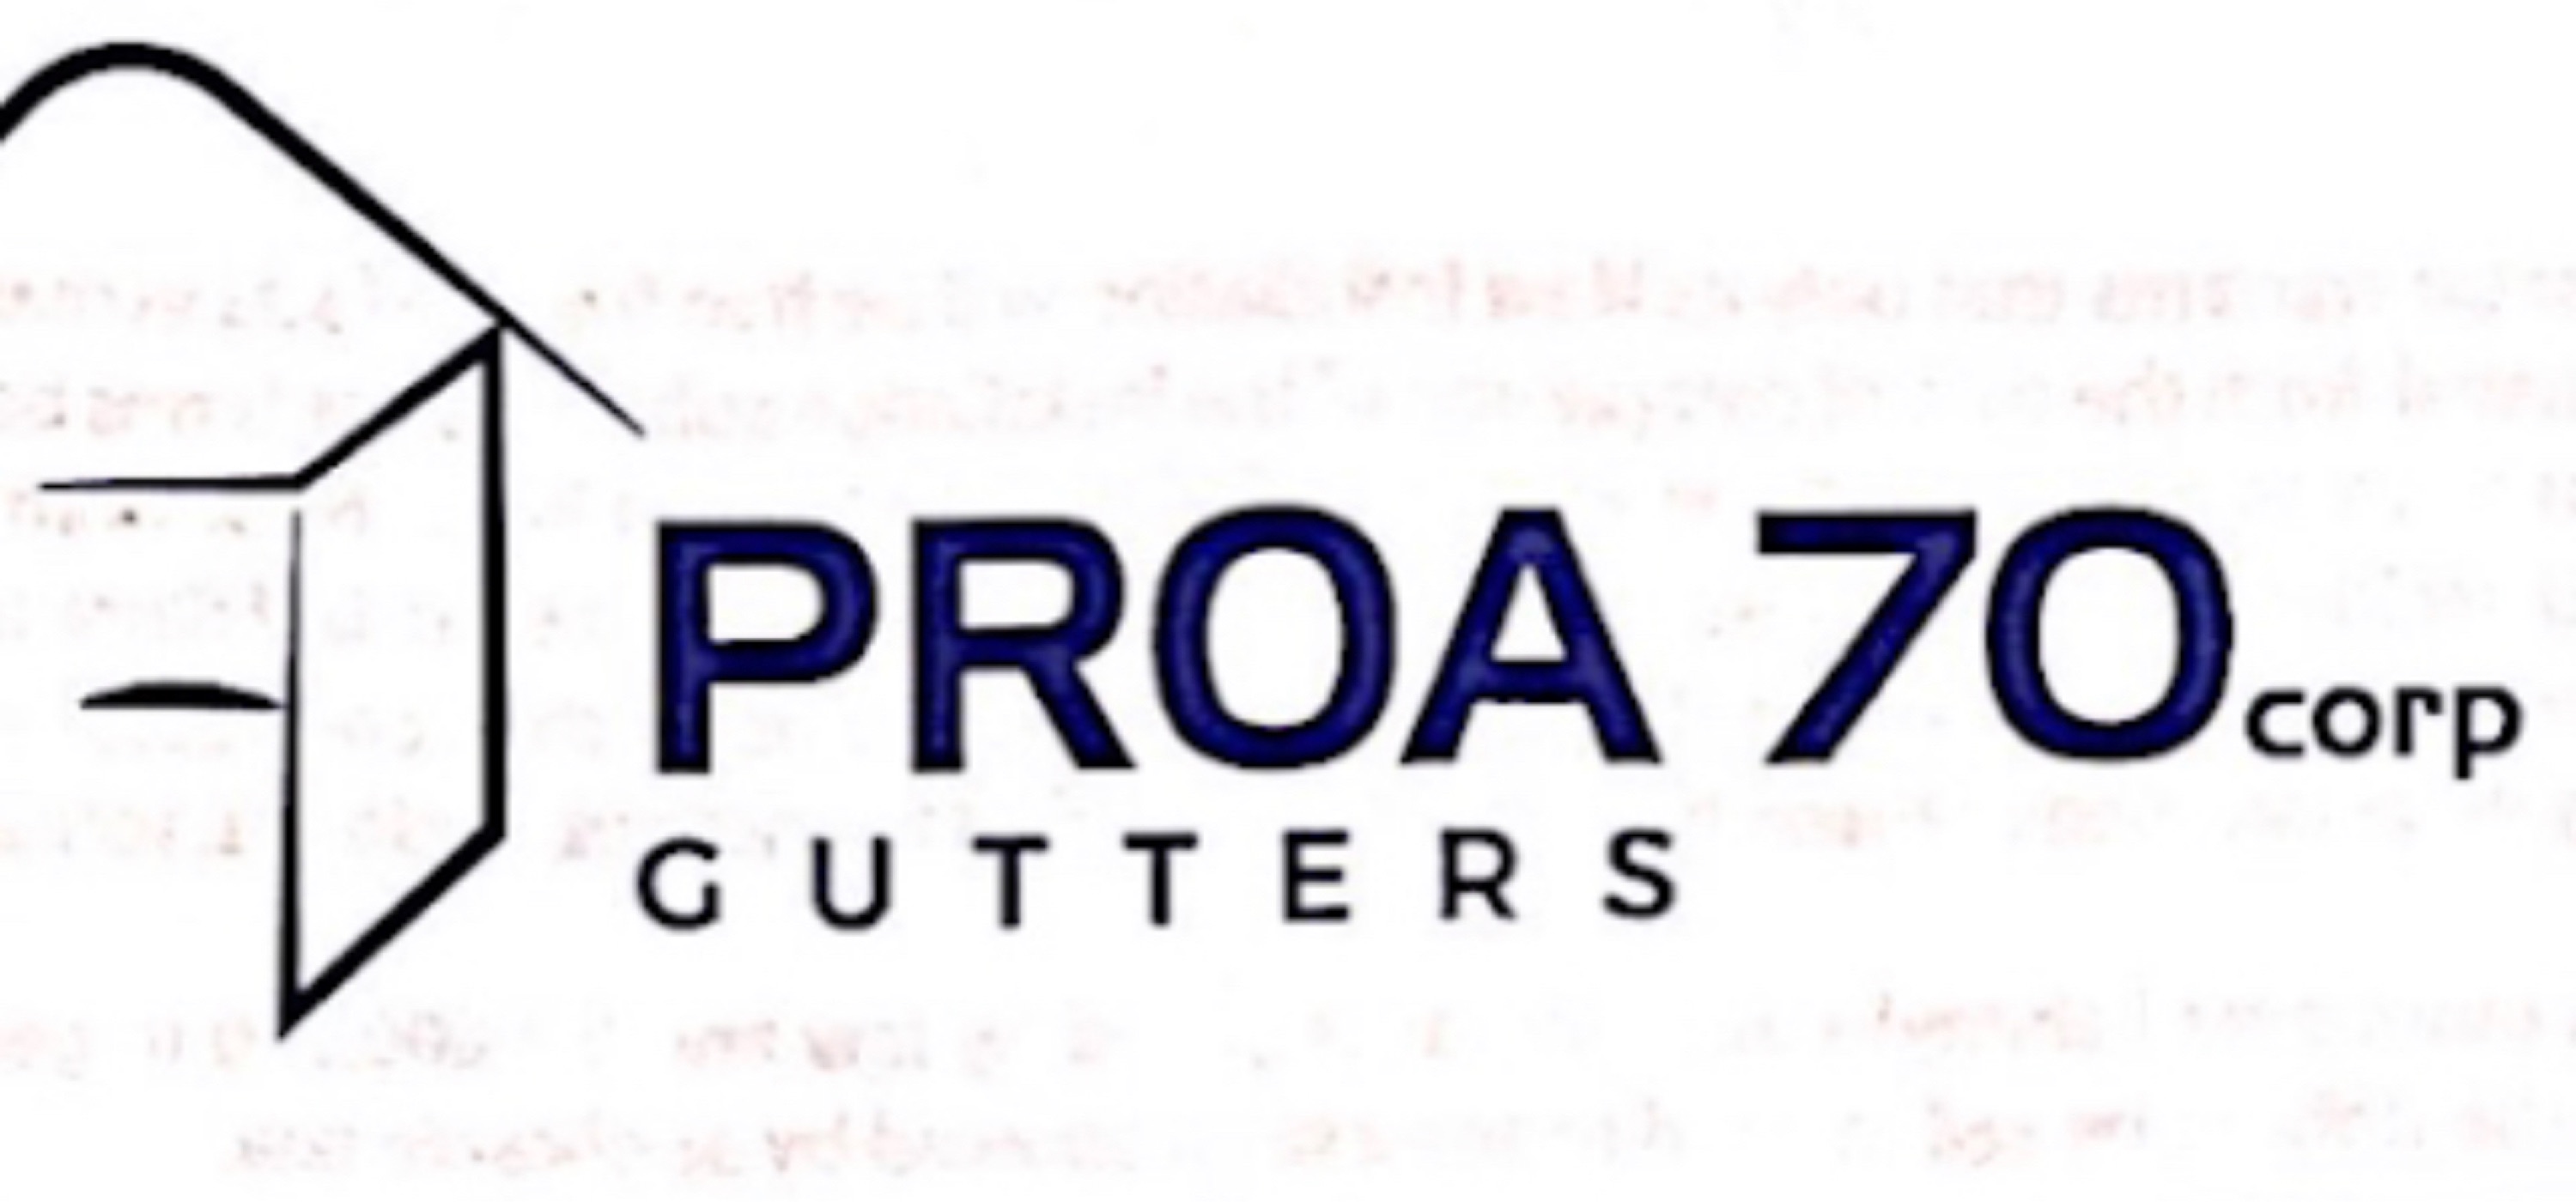 Proa70 Gutters Logo